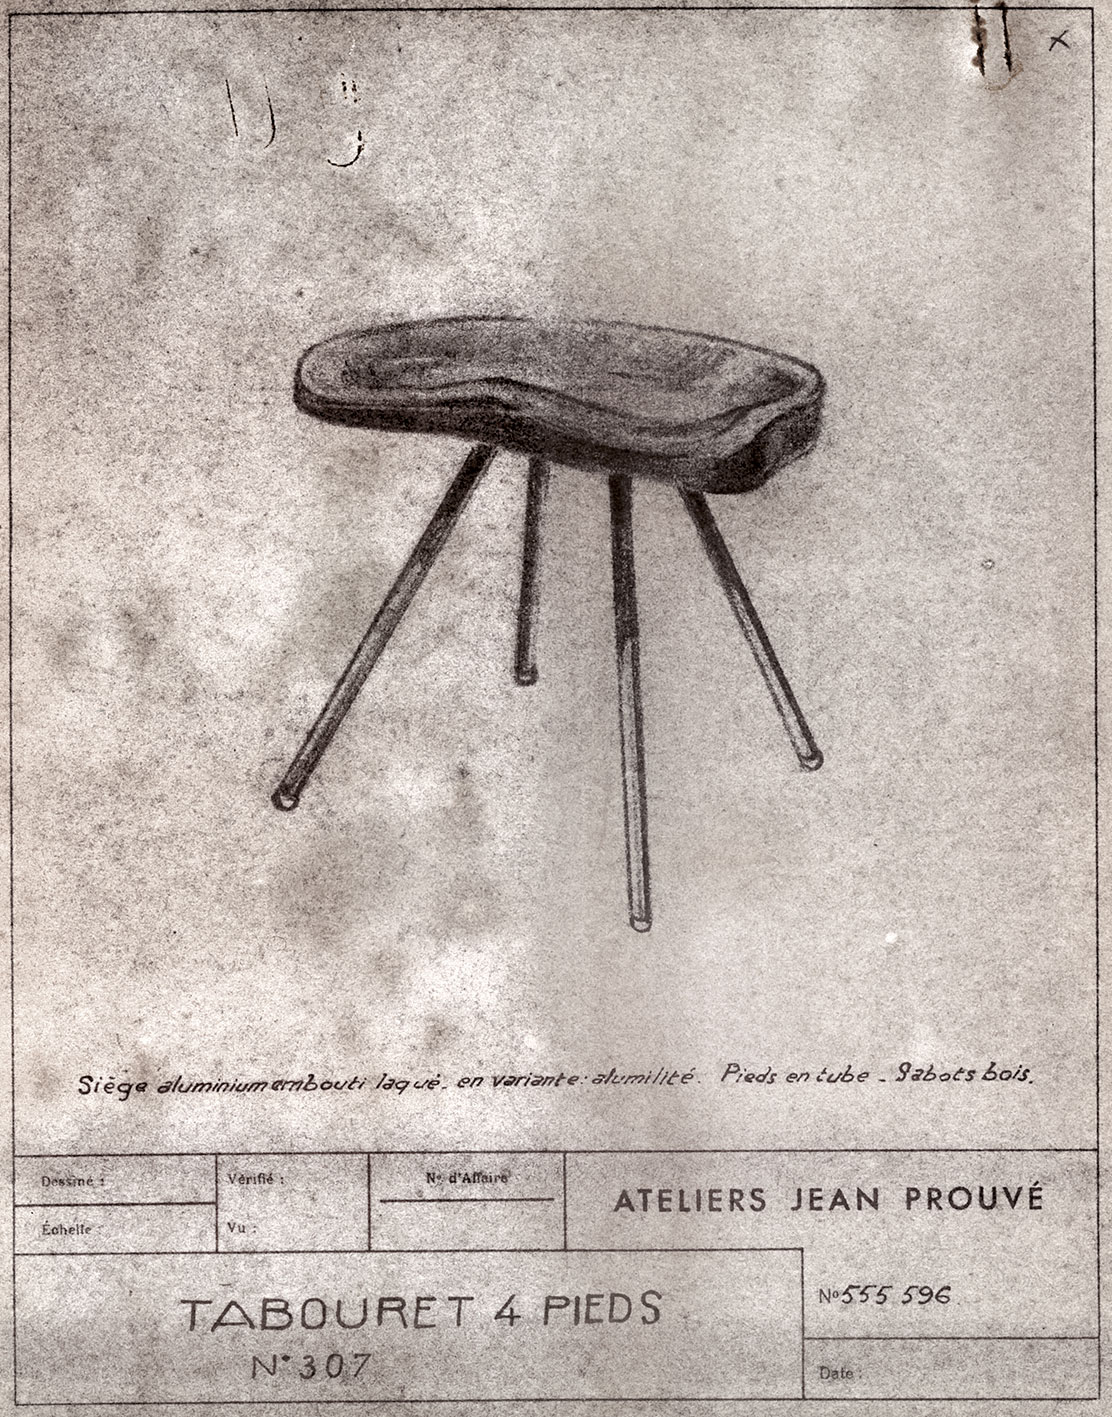 “Four-legged stool no. 307”. Ateliers Jean Prouvé, descriptive sheet no. 555.596, ca. 1952.